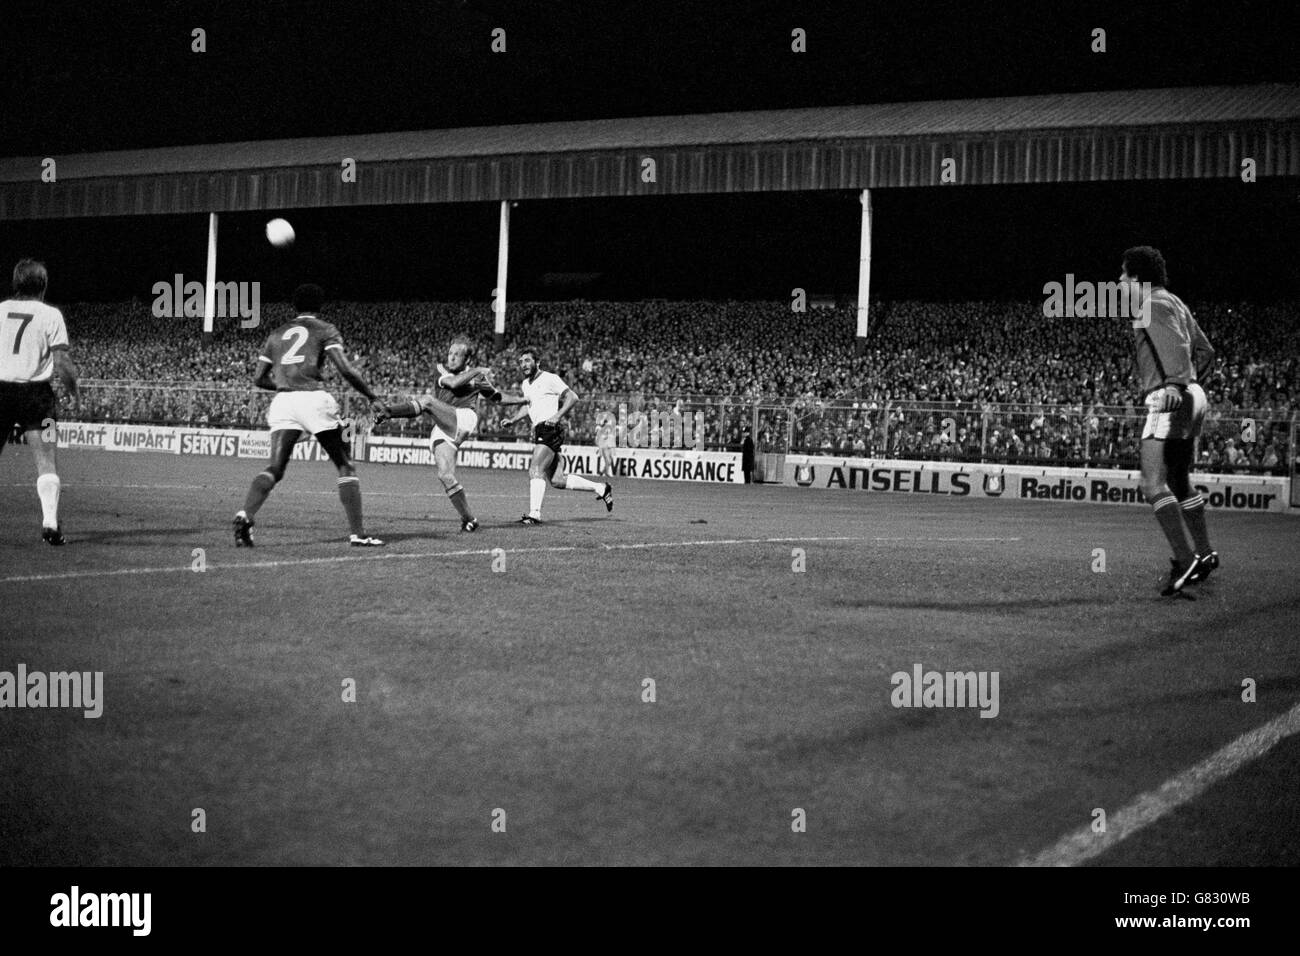 Archie Gemmill (c) von Nottingham Forest hackt den Ball frei, beobachtet von den Teamkollegen Peter Shilton (r) und Viv Anderson (zweite l), und Liverpools Kenny Dalglish (l) und Alan Kennedy (r) Stockfoto